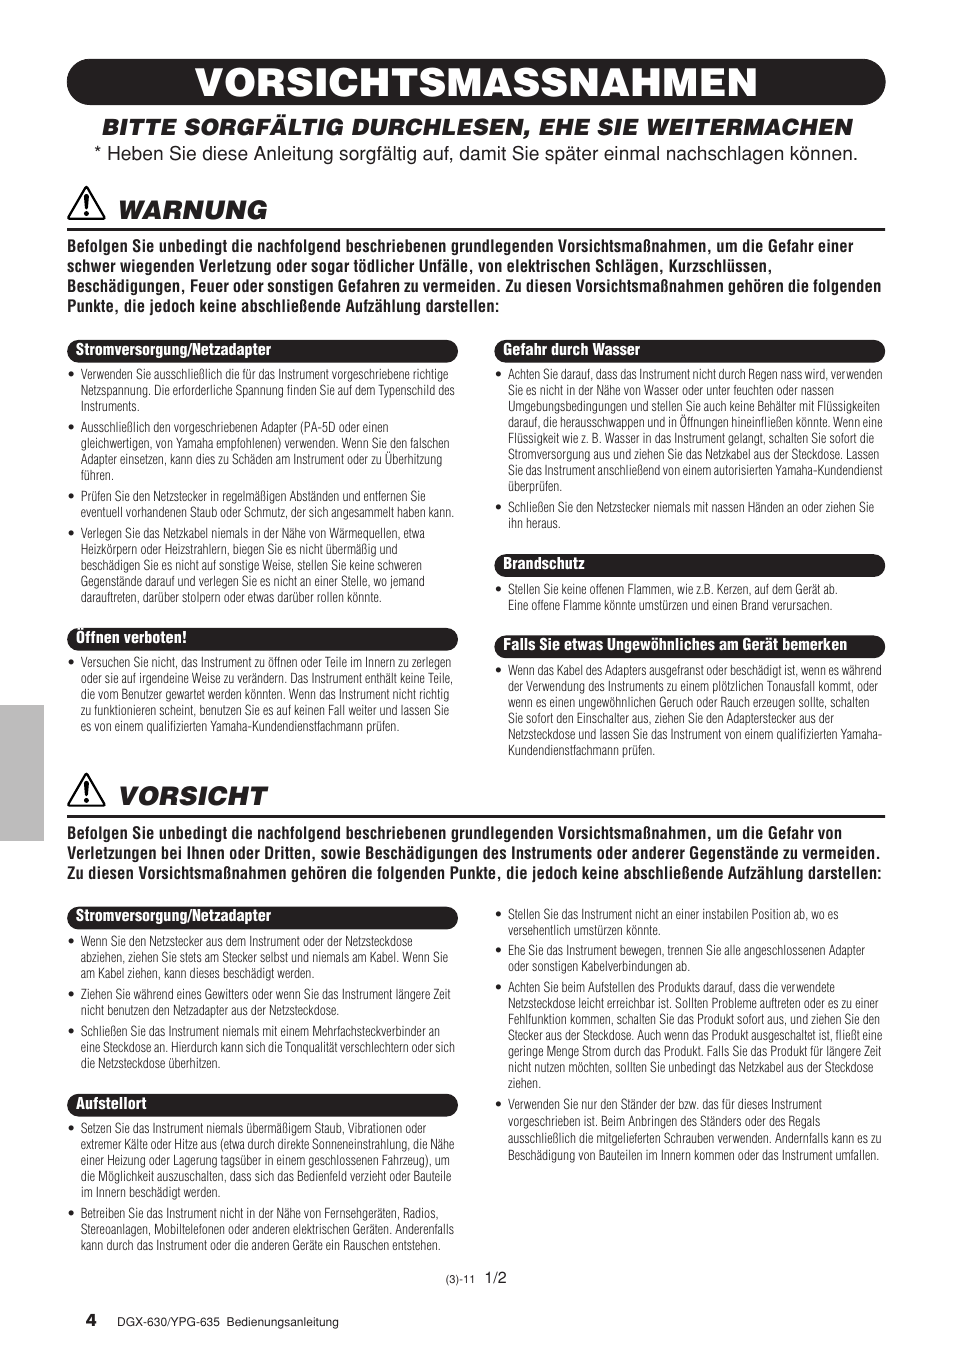 Vorsichtsmassnahmen, Warnung, Vorsicht | Bitte sorgfältig durchlesen, ehe sie weitermachen | Yamaha DGX-630 Benutzerhandbuch | Seite 4 / 160